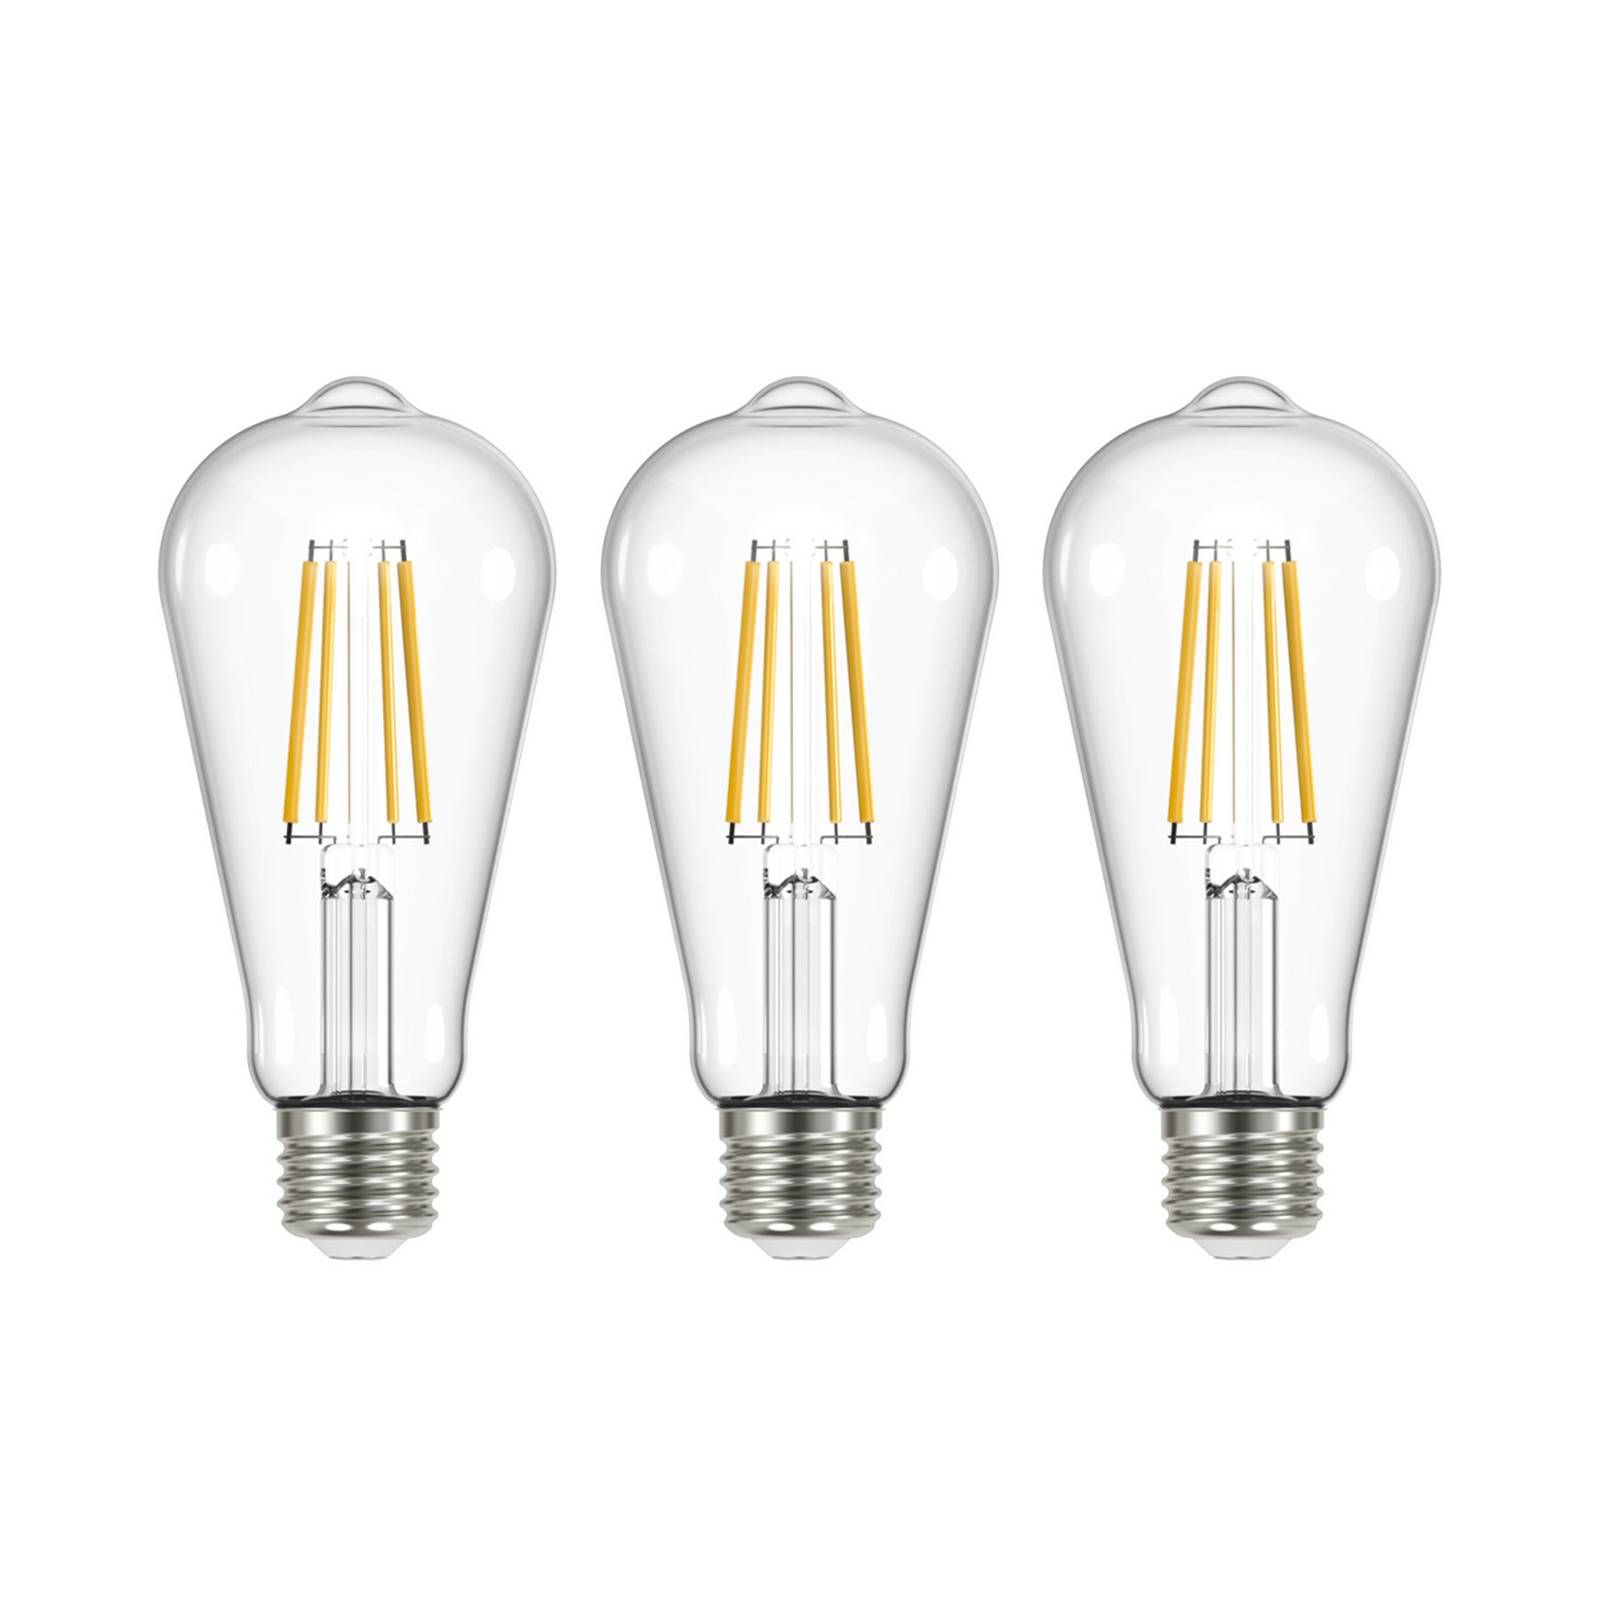 Arcchio LED žiarovka číra E27 3, 8W 3000K 806lm 3ks, sklo, polykarbonát, hliník, E27, 3.8W, Energialuokka: A, P: 14.5 cm